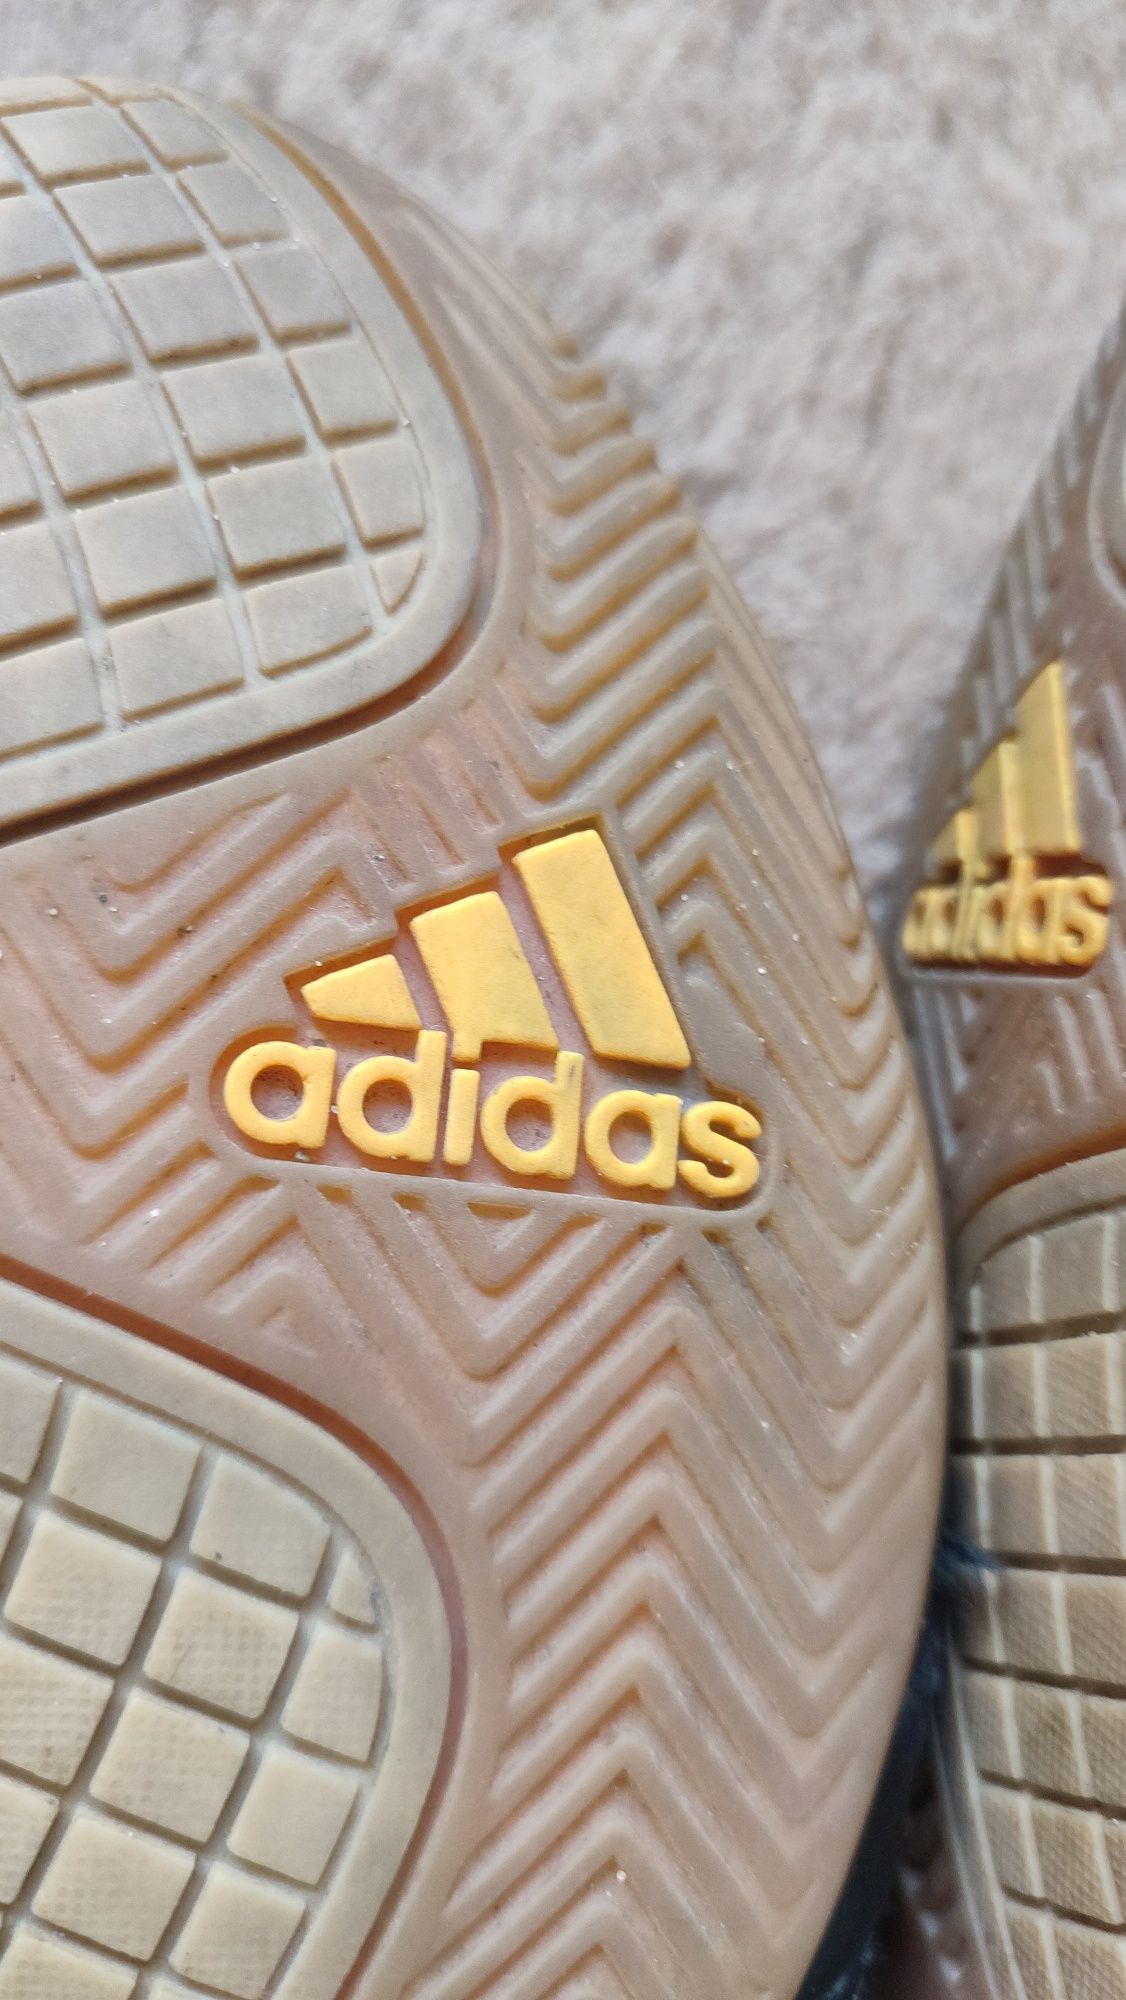 Buty sportowe oryginalne Adidas rozm 39 1/3 wkładka na zdjęciu